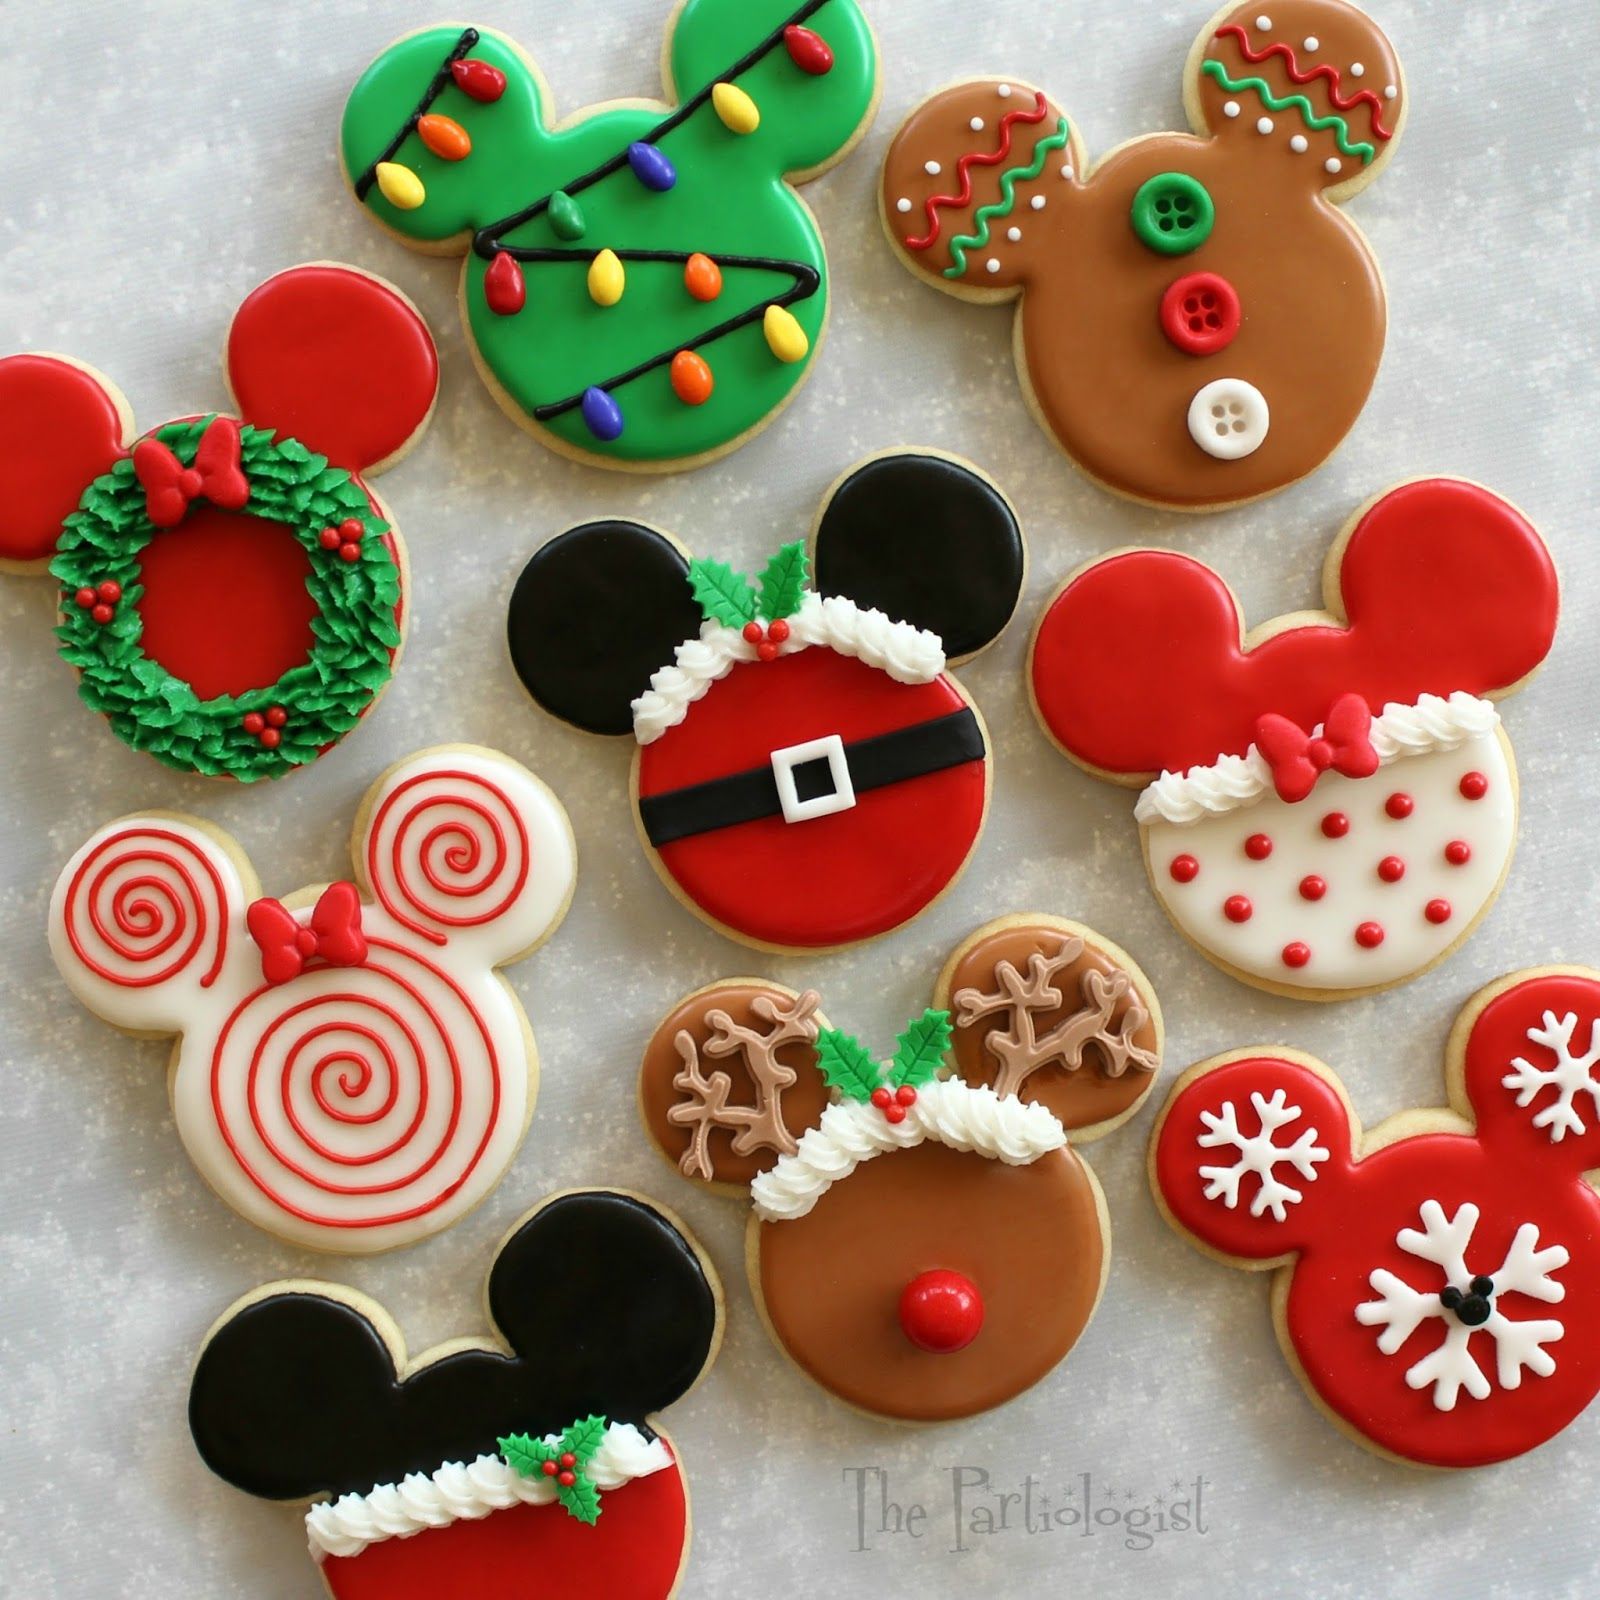 Disney Themed Christmas Cookies! | Christmas cookies, Sugar cookies ...